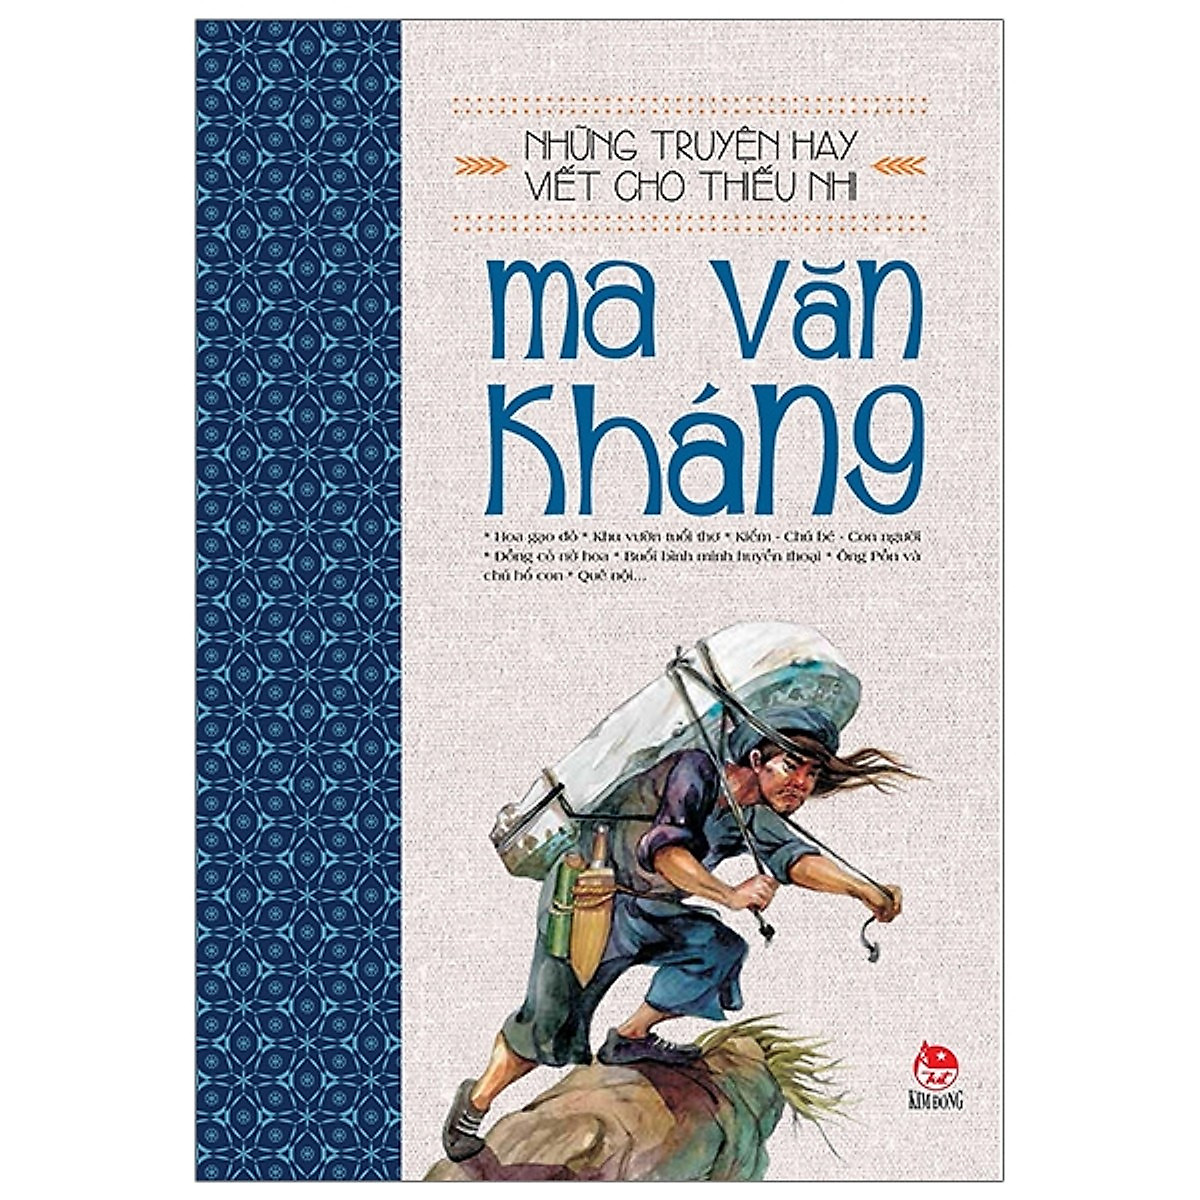 Những Truyện Hay Viết Cho Thiếu Nhi - Ma Văn Kháng (Tái Bản 2019) - Tặng Kèm Sổ Tay